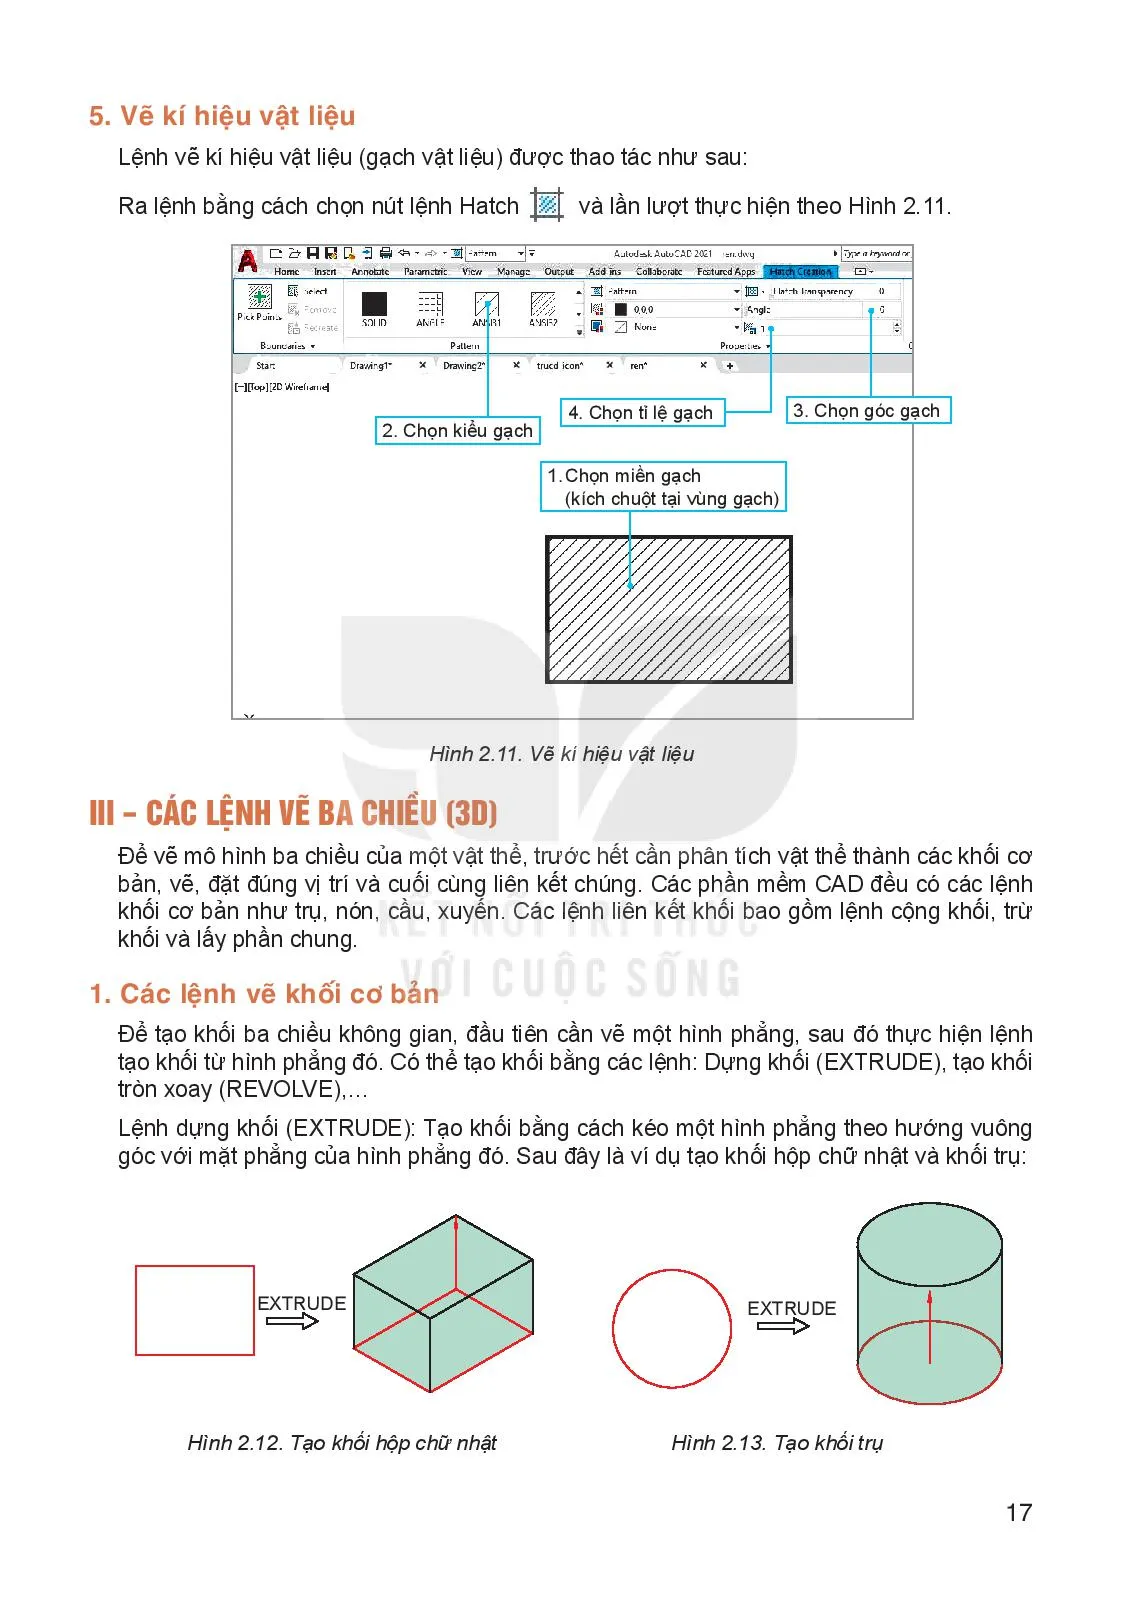 Bài 2. Sử dụng phần mềm CAD để lập bản vẽ kĩ thuật